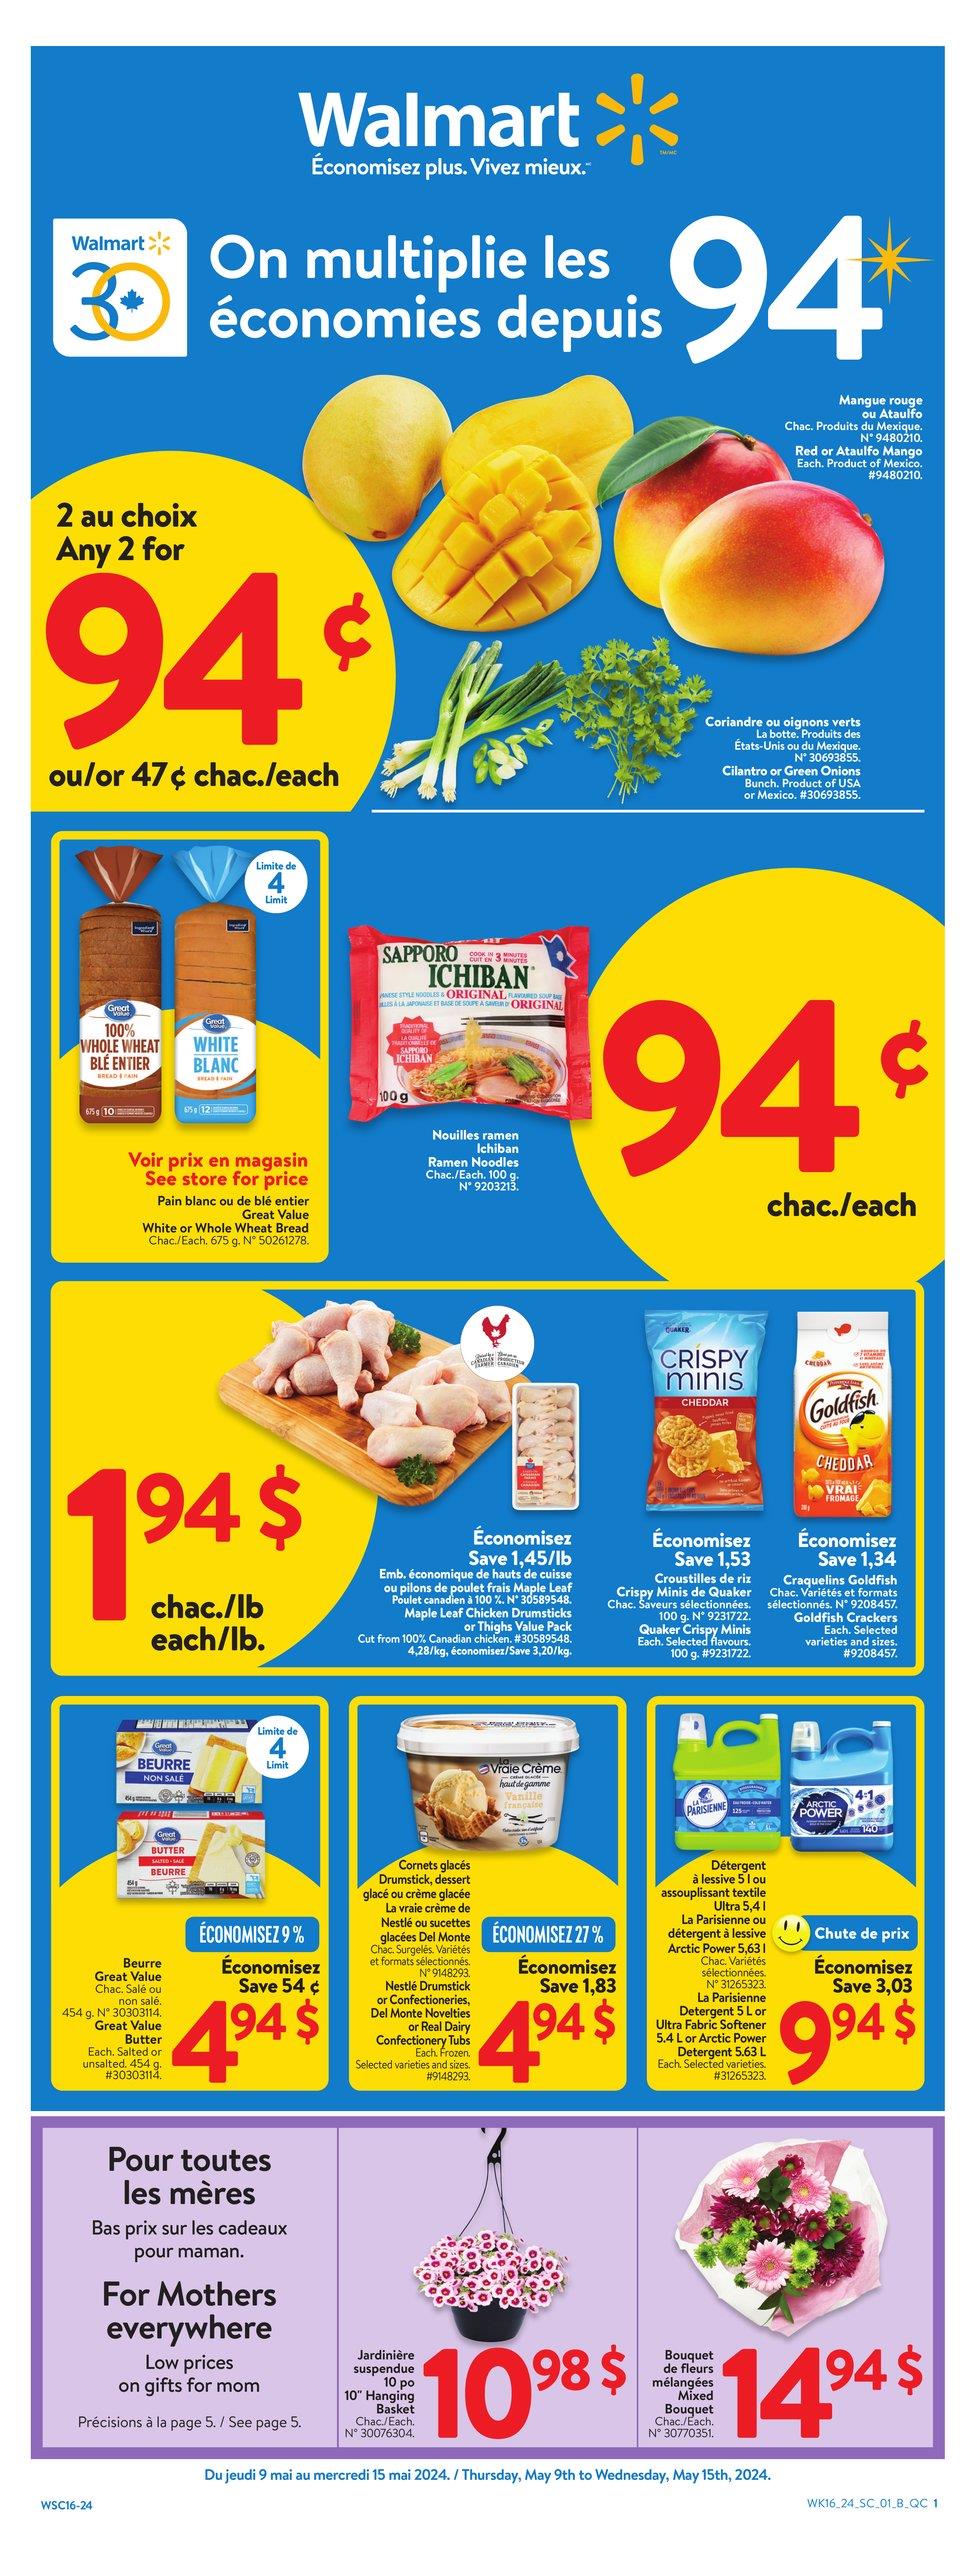 Walmart Canada - Quebec - Weekly Flyer Specials